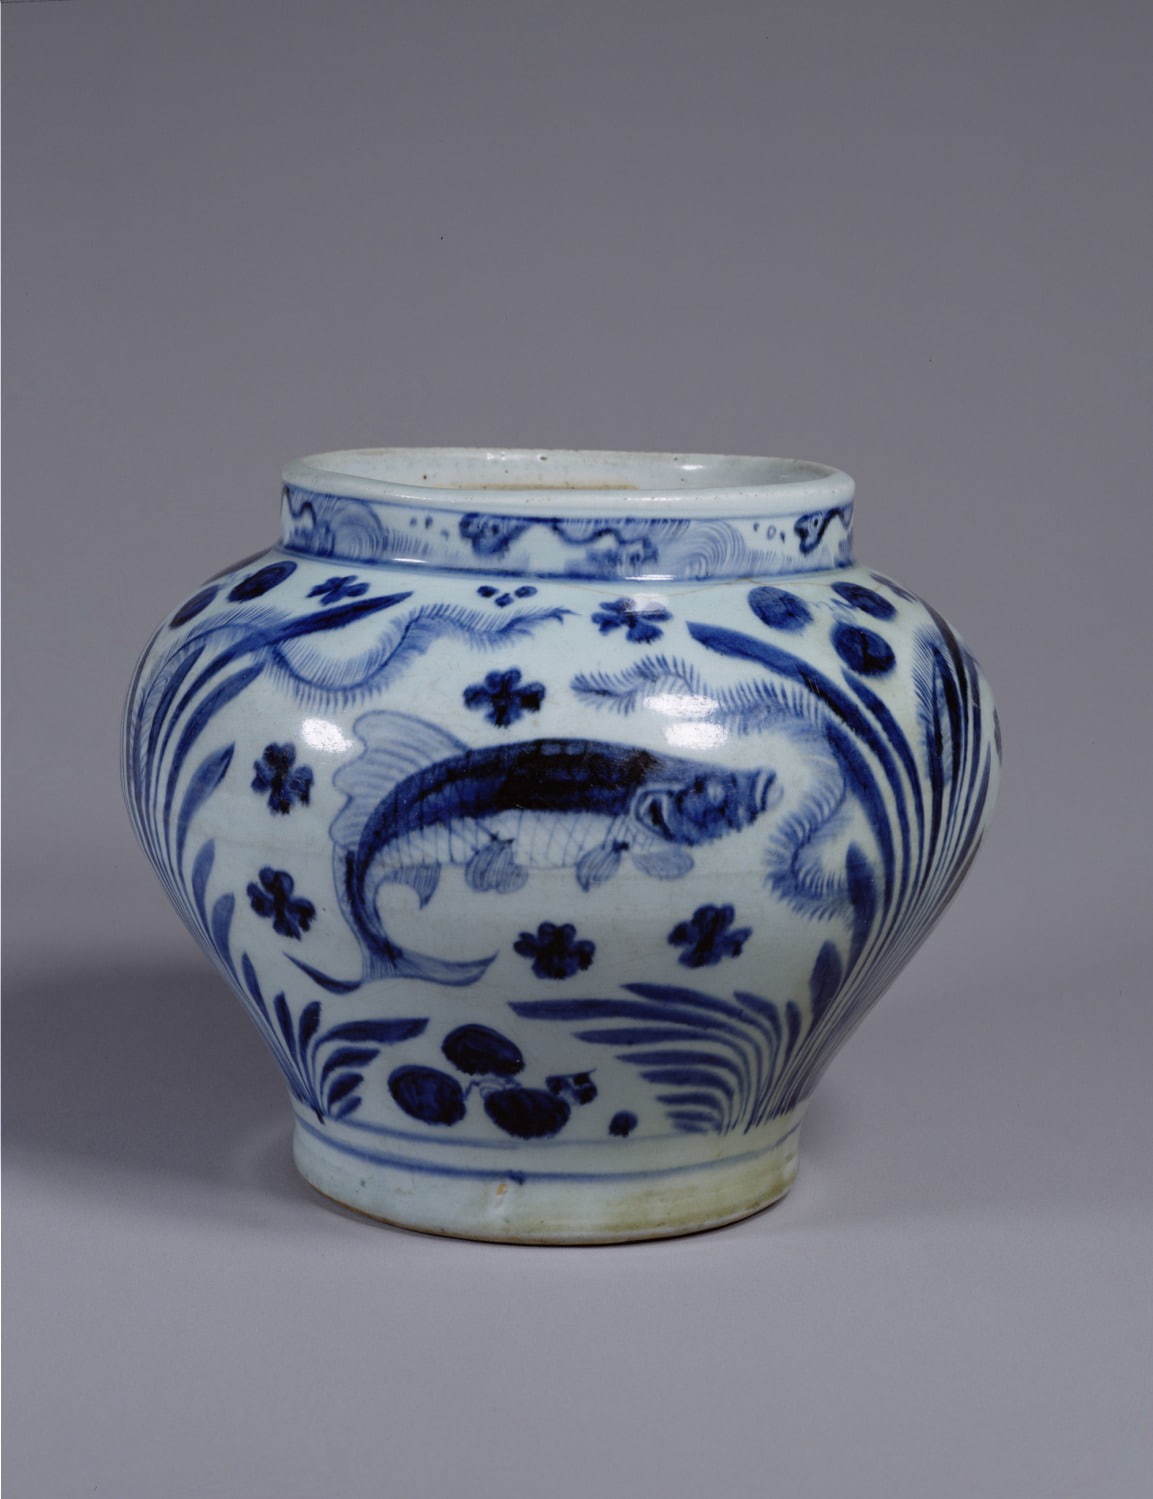 《染付魚藻文壺》(重要文化財) 元時代 14世紀 東京国立博物館所蔵
Image：TNM Image Archives